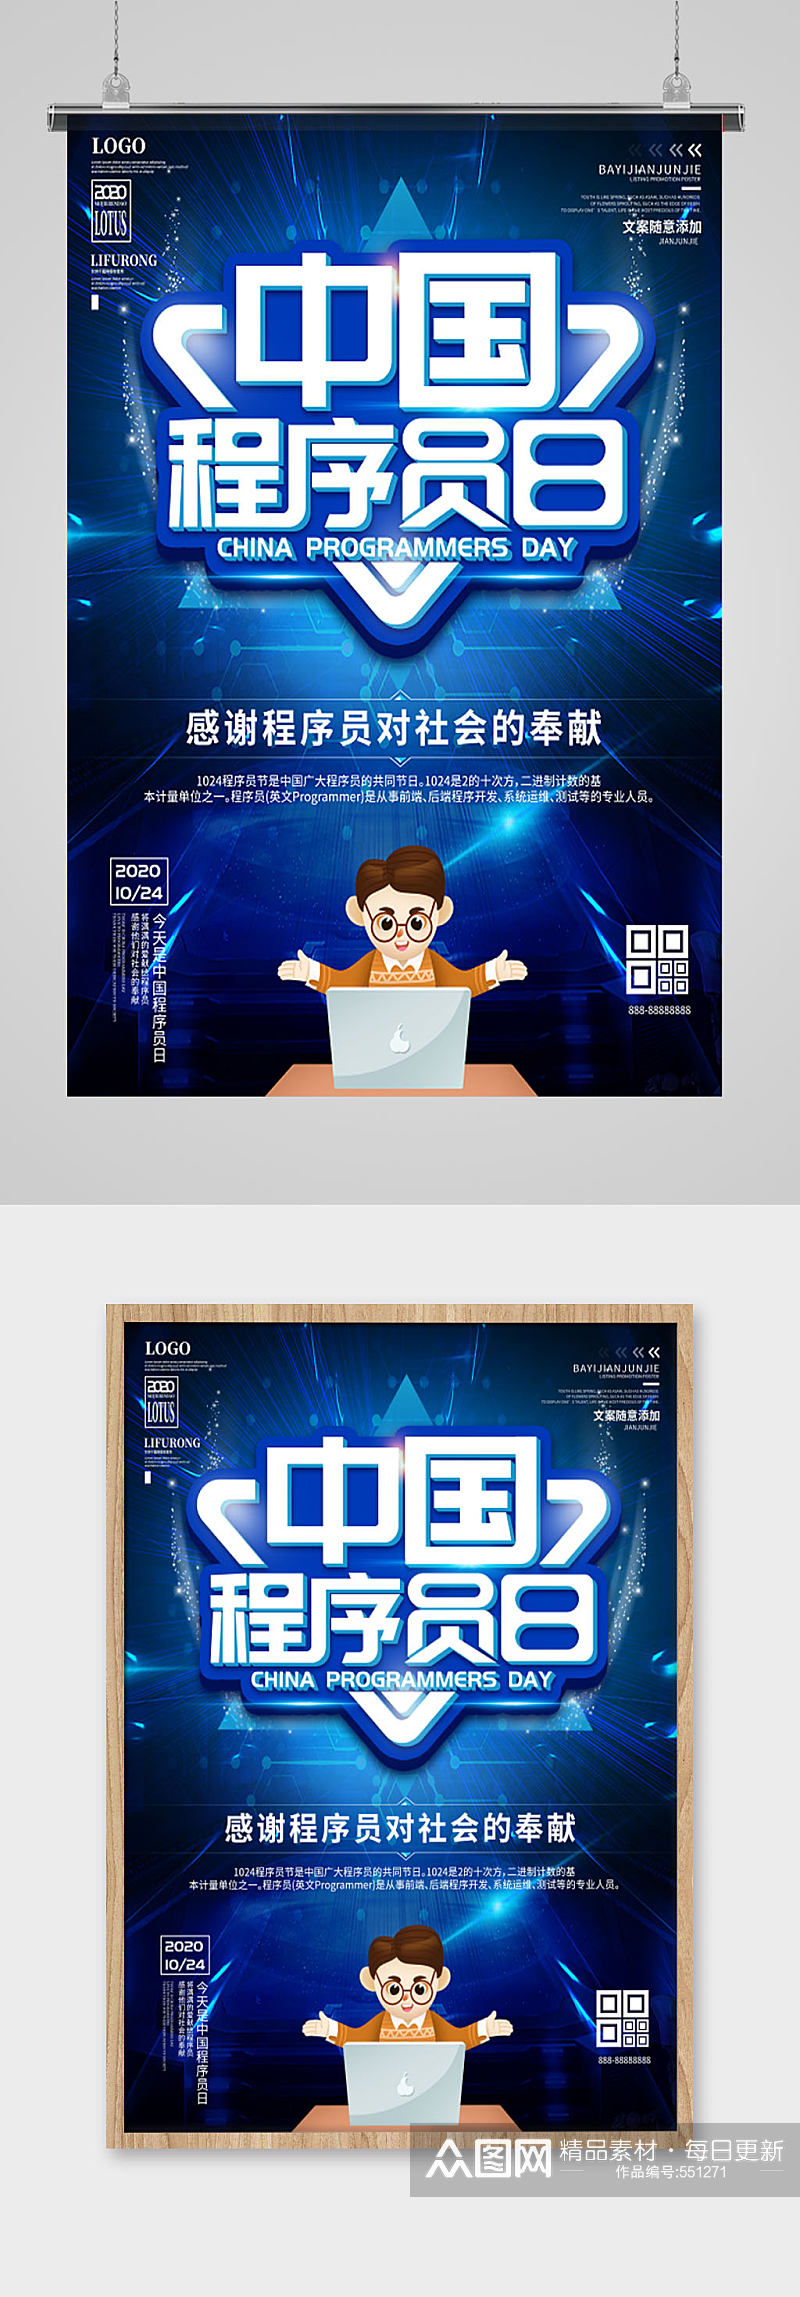 中国程序员日蓝色科技 程序员节 海报素材